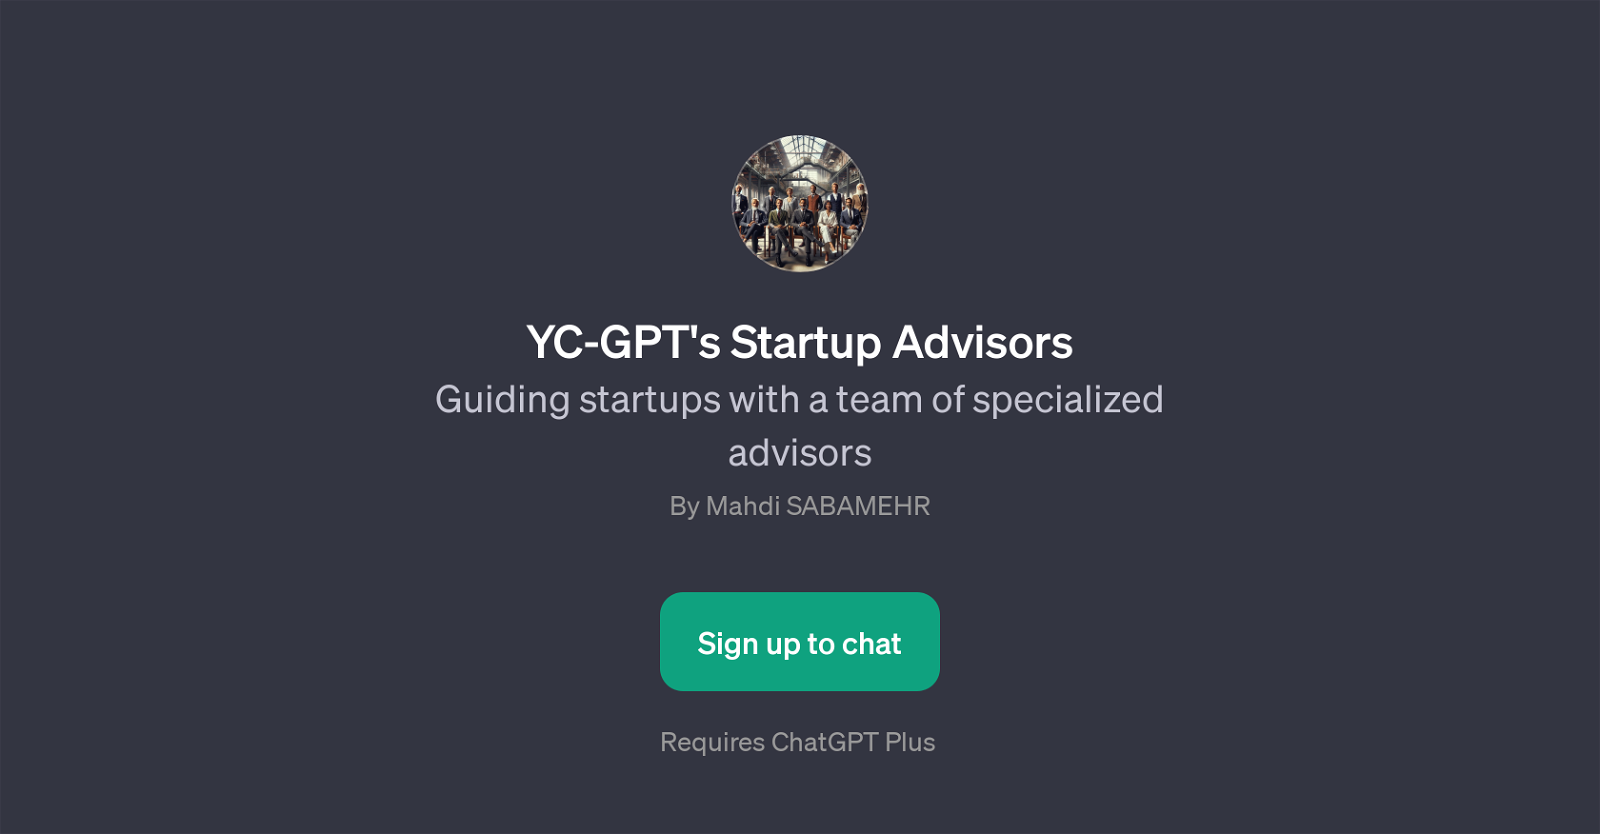 YC-GPT's Startup Advisors website